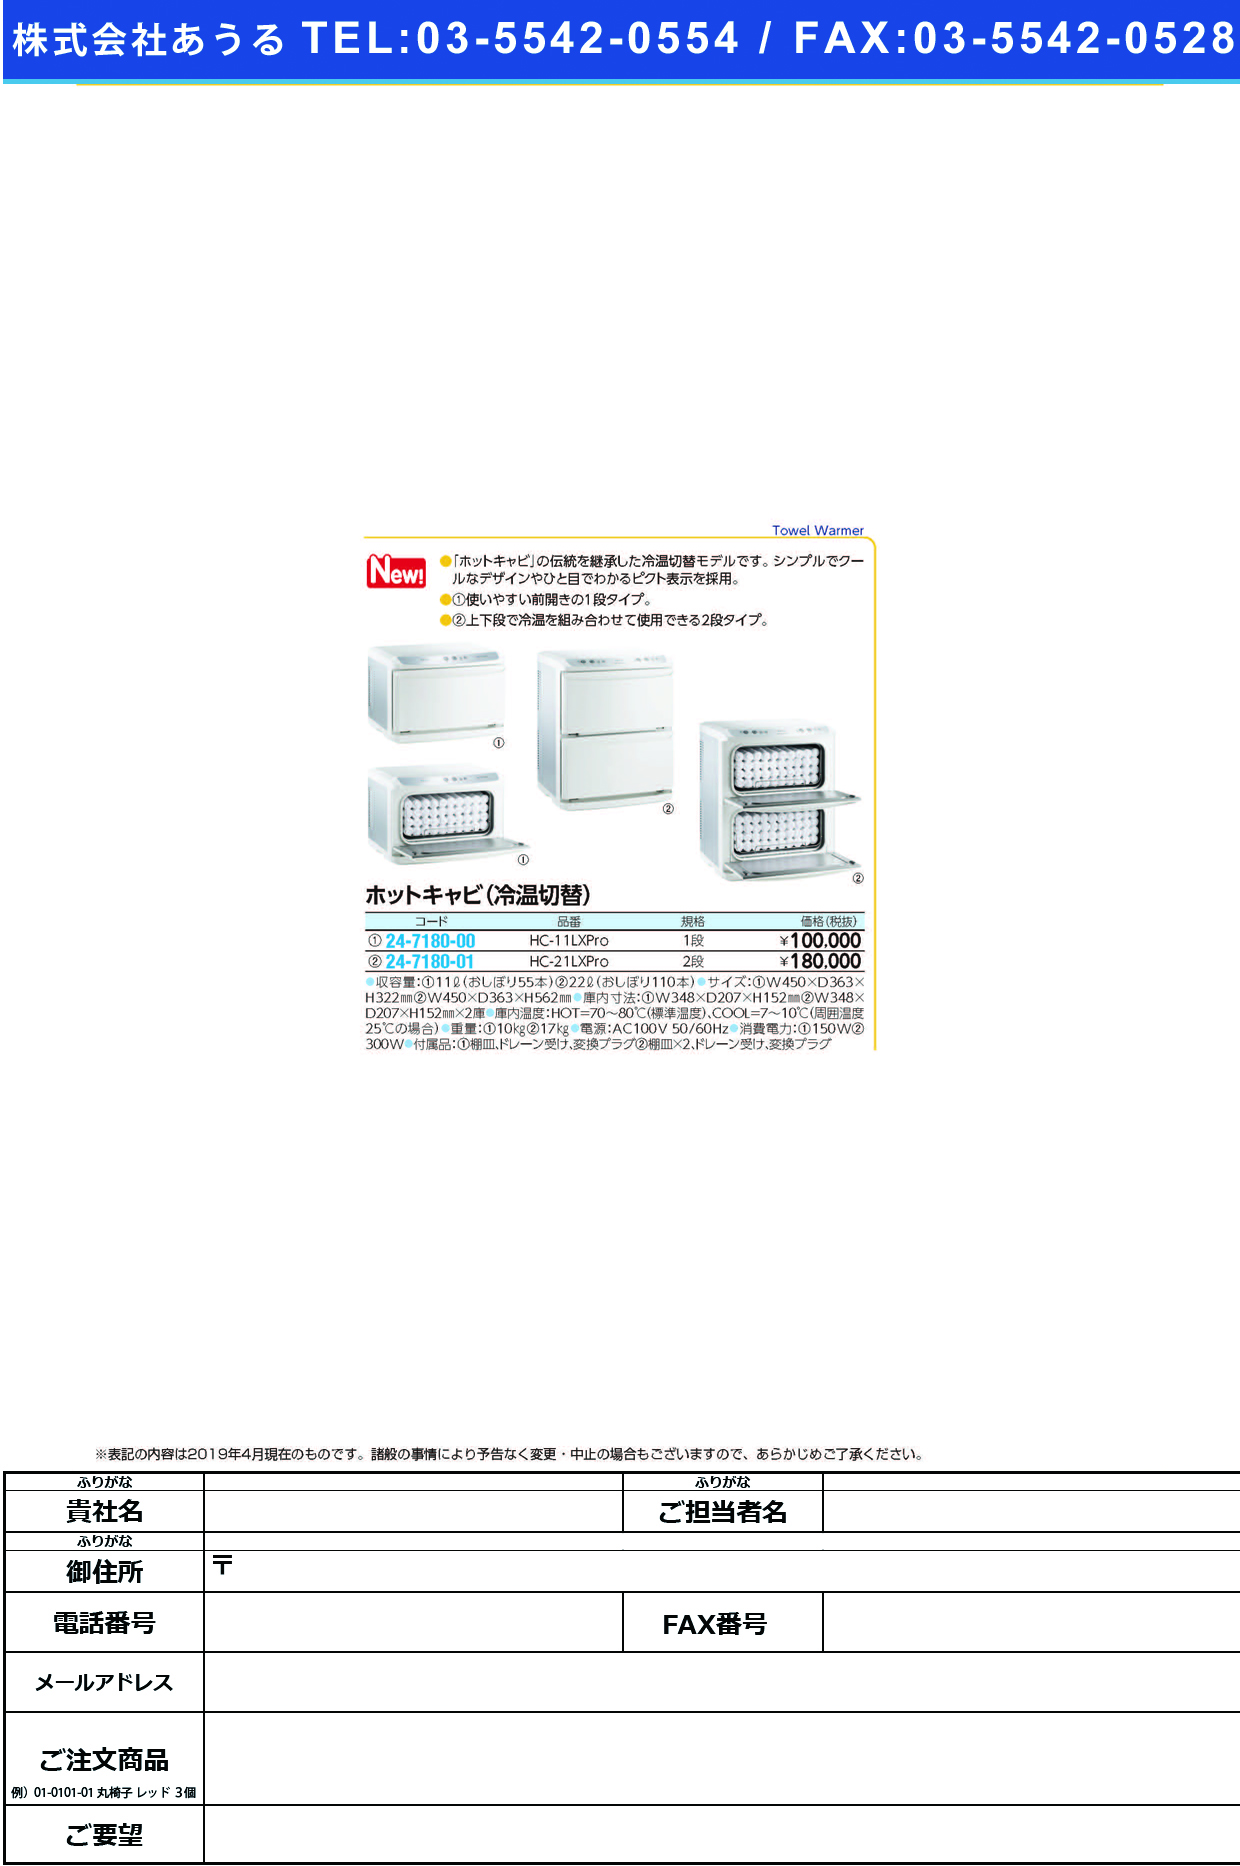 (24-7180-00)ホットキャビ（冷温切替モデル）HC-11LXPRO ﾎｯﾄｷｬﾋﾞ(ﾚｲｵﾝｷﾘｶｴﾓﾃﾞﾙ(タイジ)【1台単位】【2019年カタログ商品】